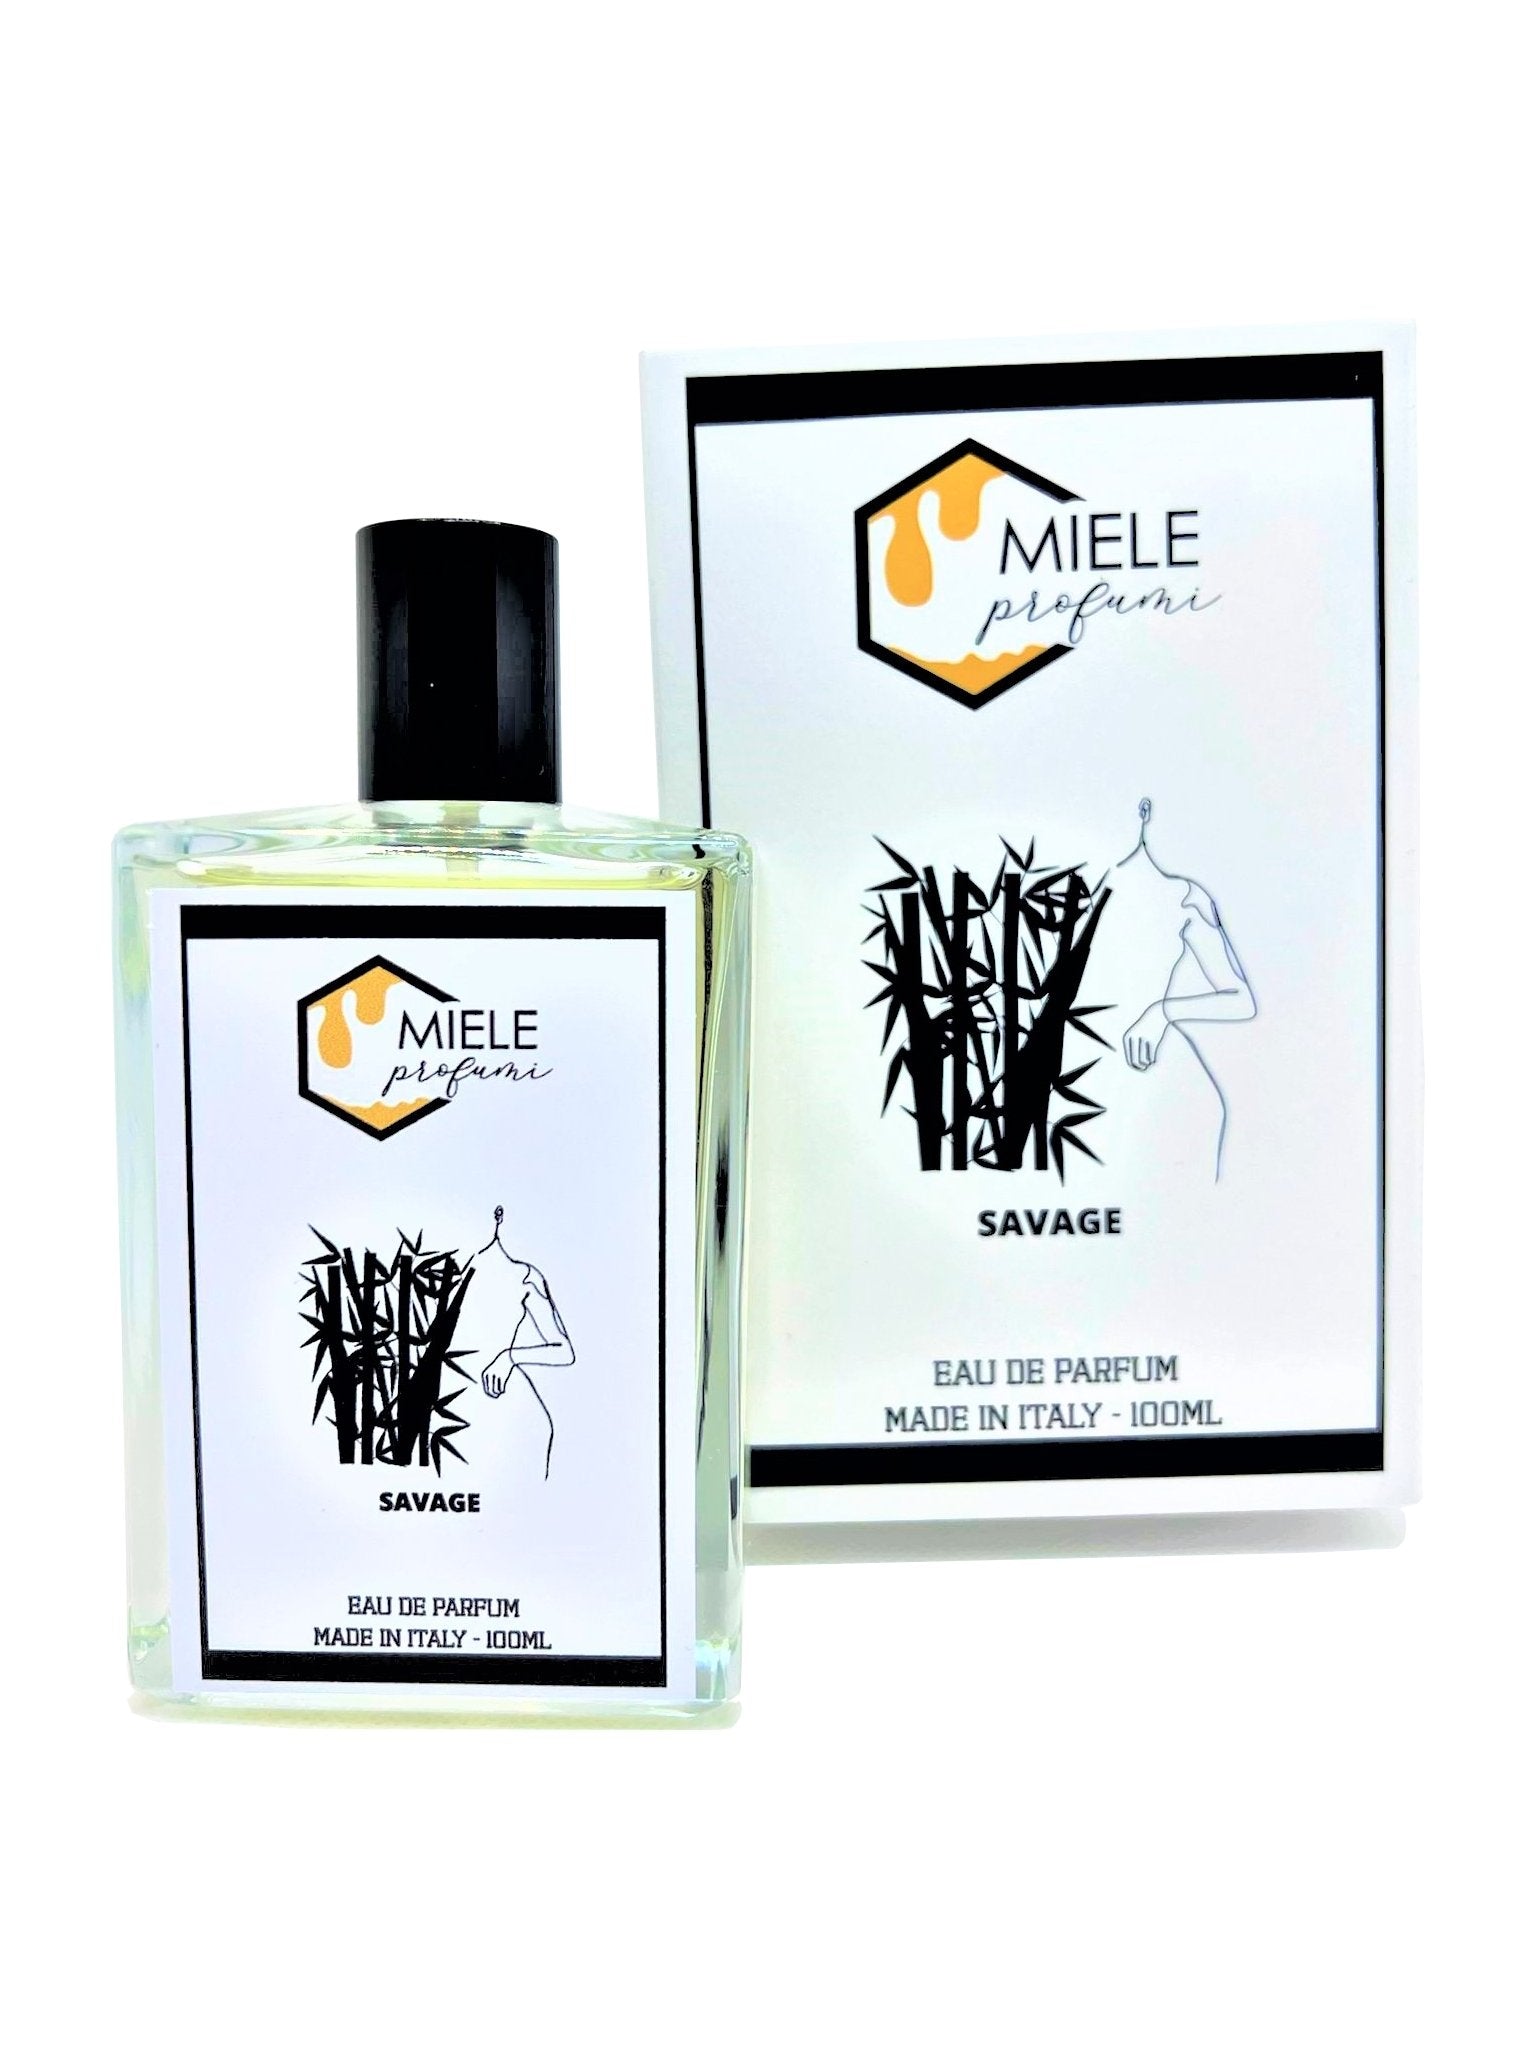 Savage - miele profumi profumo ispirato equivalente sauvage dior alta persistenza scia fragranza unica unisex Made in Italy